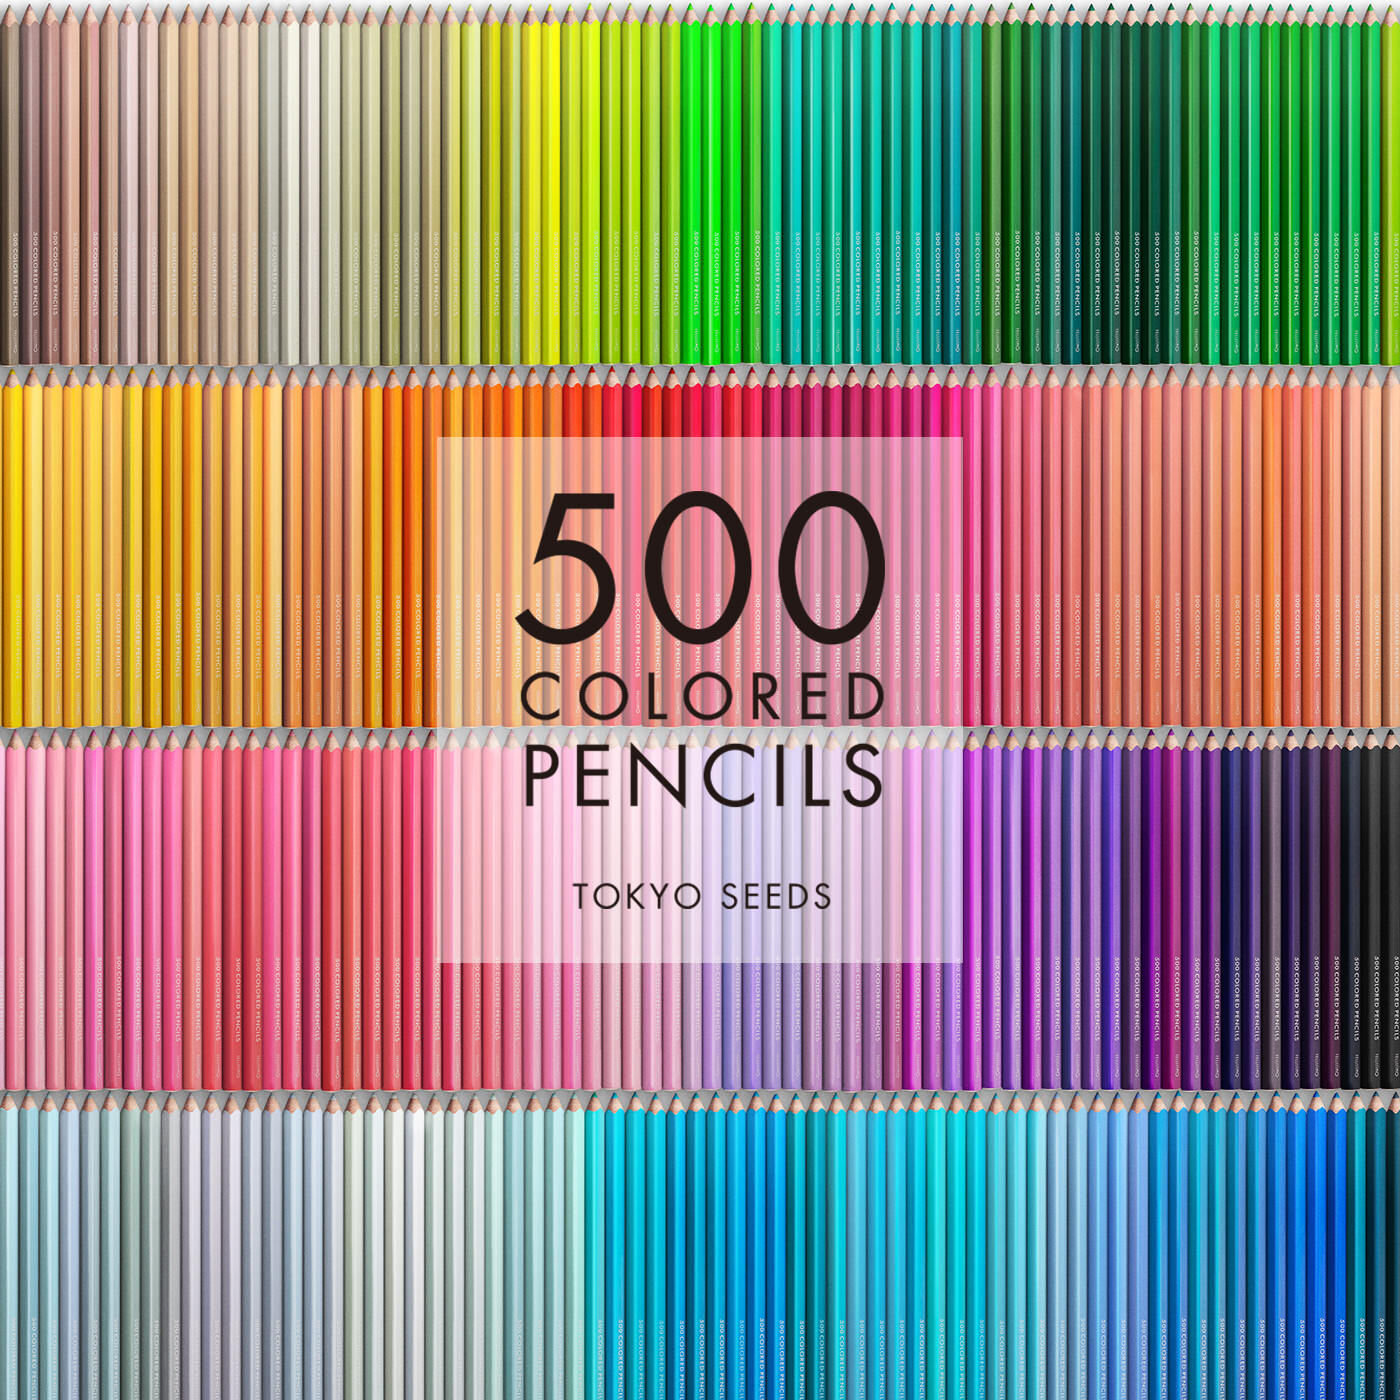 Real Stock|【53/500 SKY DIVE】500色の色えんぴつ TOKYO SEEDS|1992年、世界初の「500色」という膨大な色数の色えんぴつが誕生して以来、その販売数は発売当初から合わせると、世界55ヵ国10万セット以上。今回、メイド・イン・ジャパンにこだわり、すべてが新しく生まれ変わって登場しました。